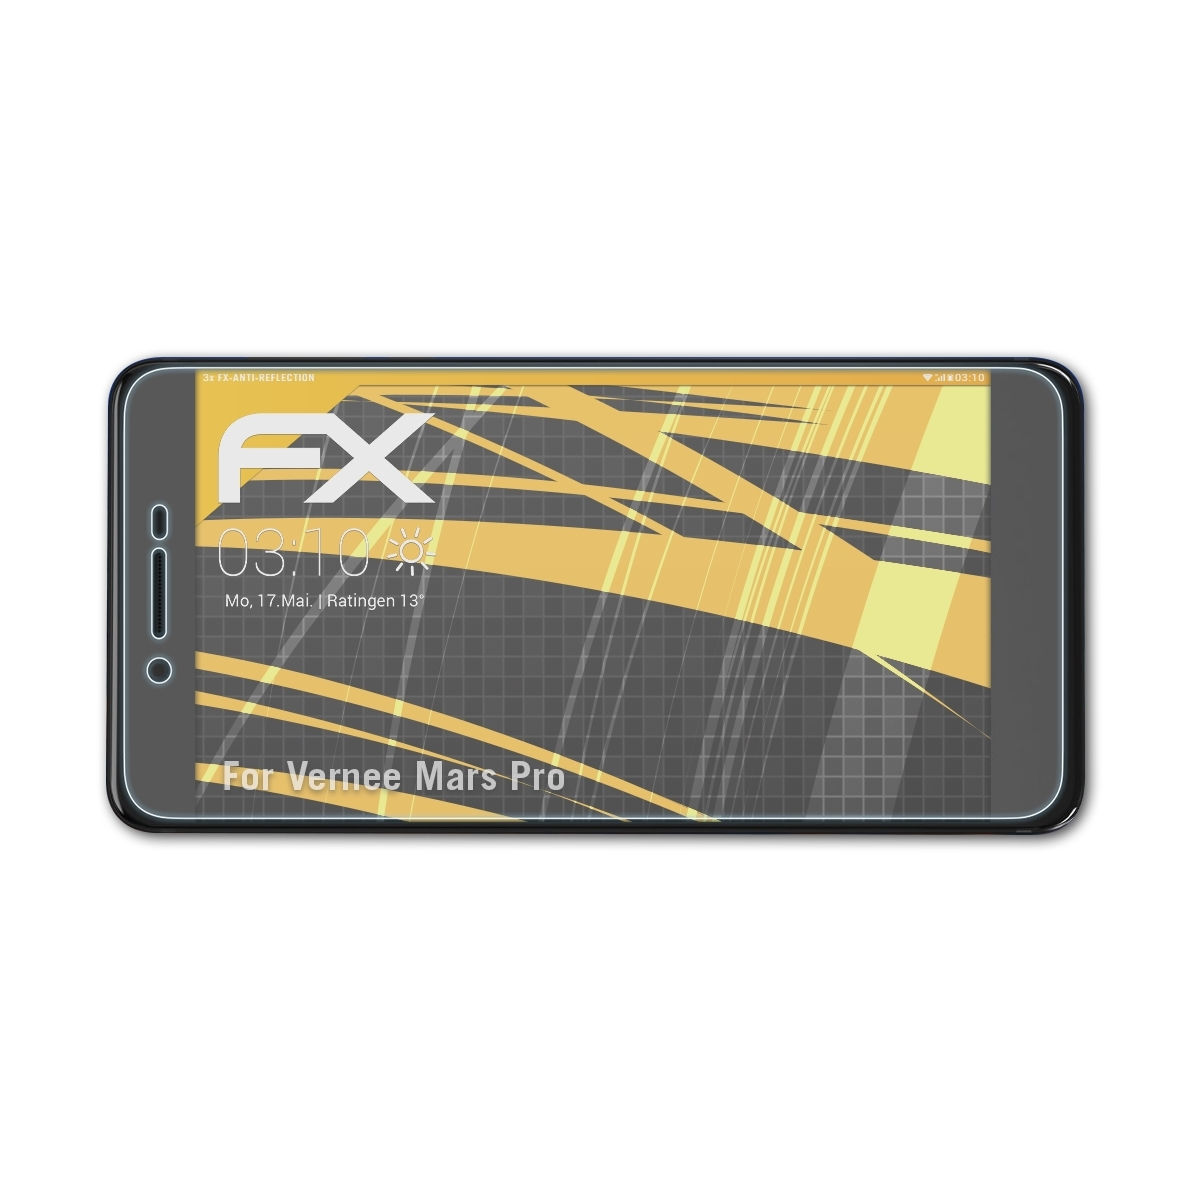 ATFOLIX 3x FX-Antireflex Vernee Displayschutz(für Mars Pro)